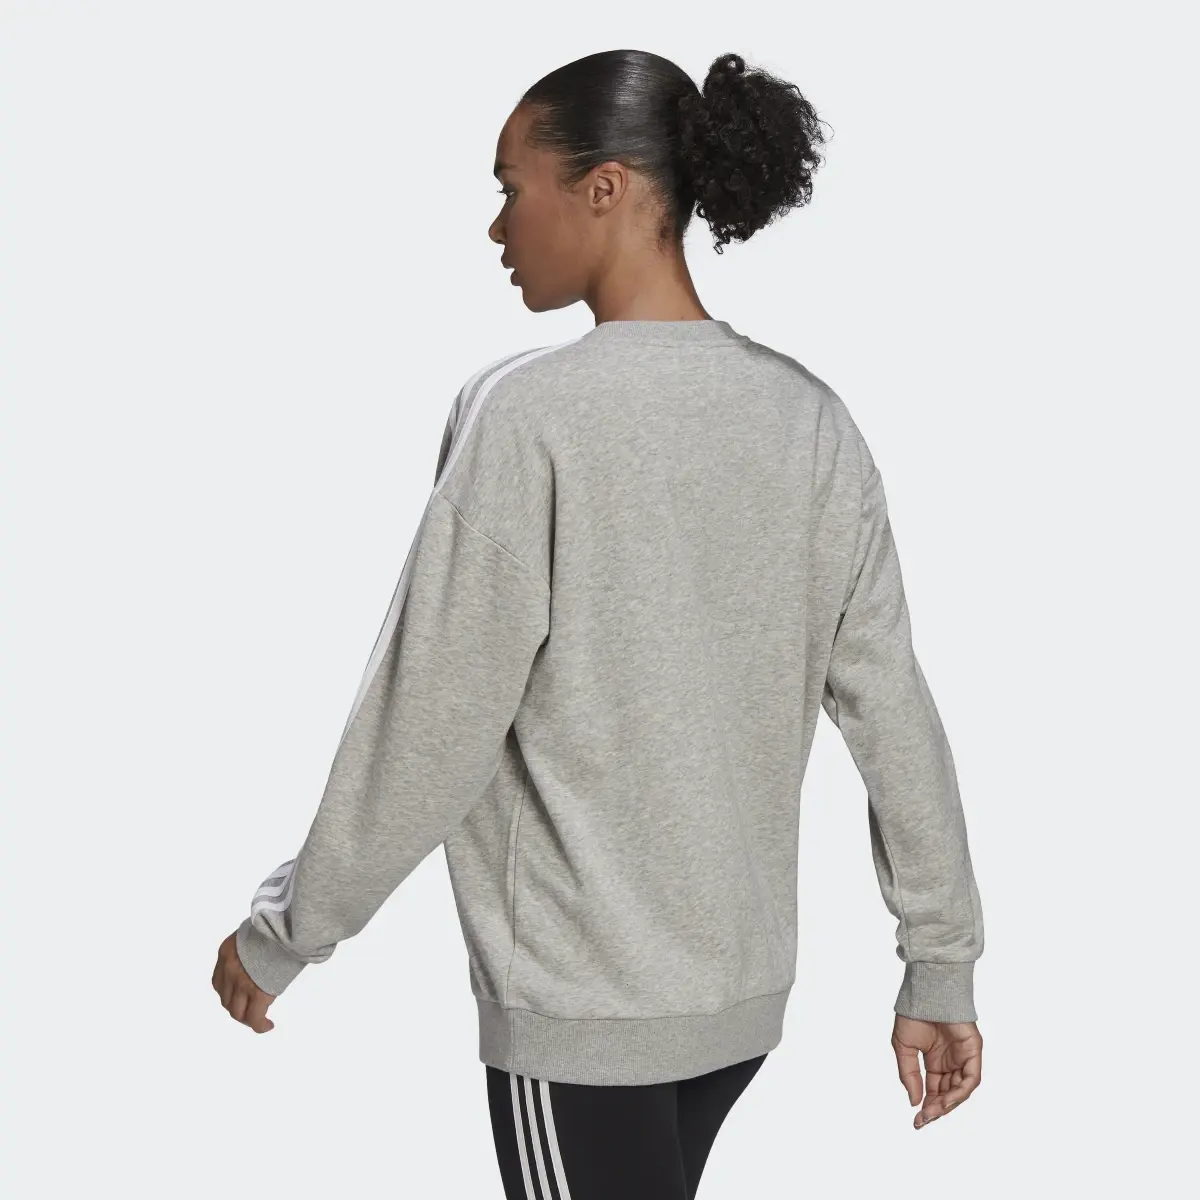 Adidas Essentials Studio Lounge 3-Streifen Sweatshirt. 3